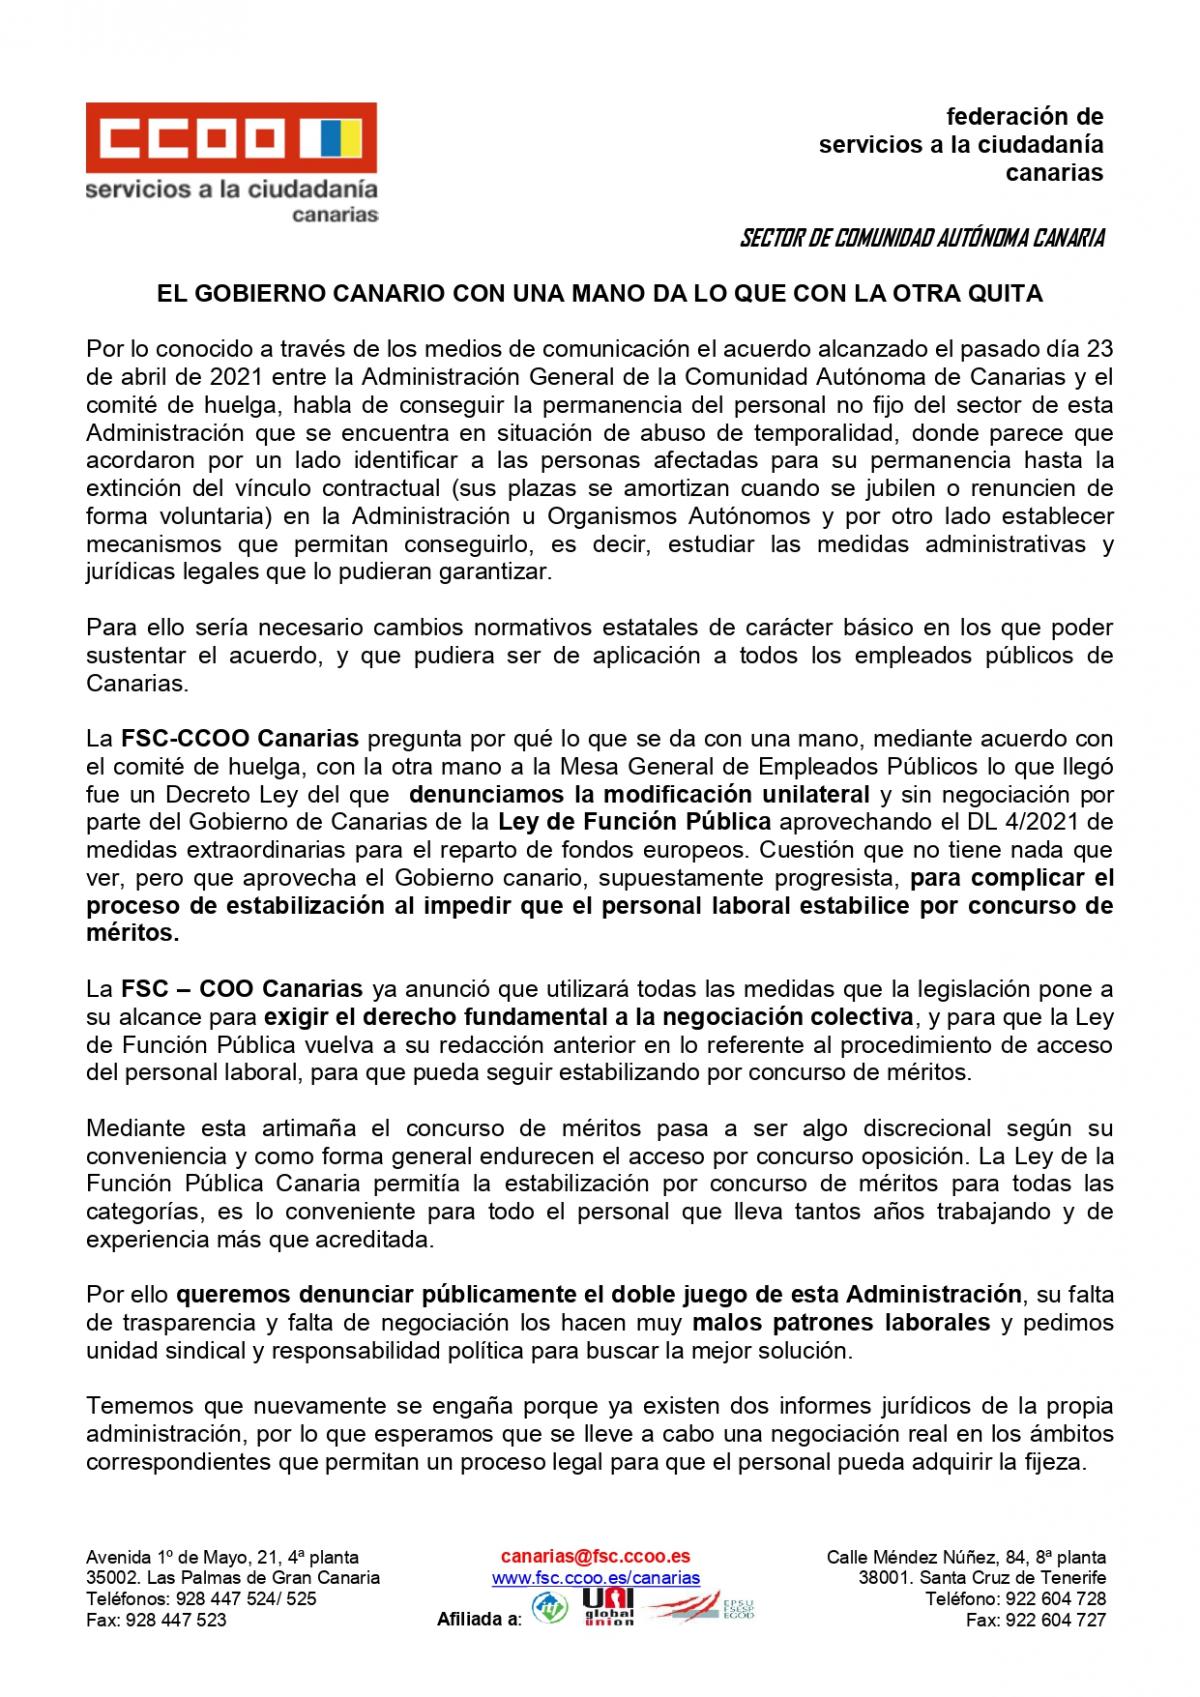 Informa Acuerdo Administracin General de la CCAA del Gobierno de Canaias y Comit de Huelga